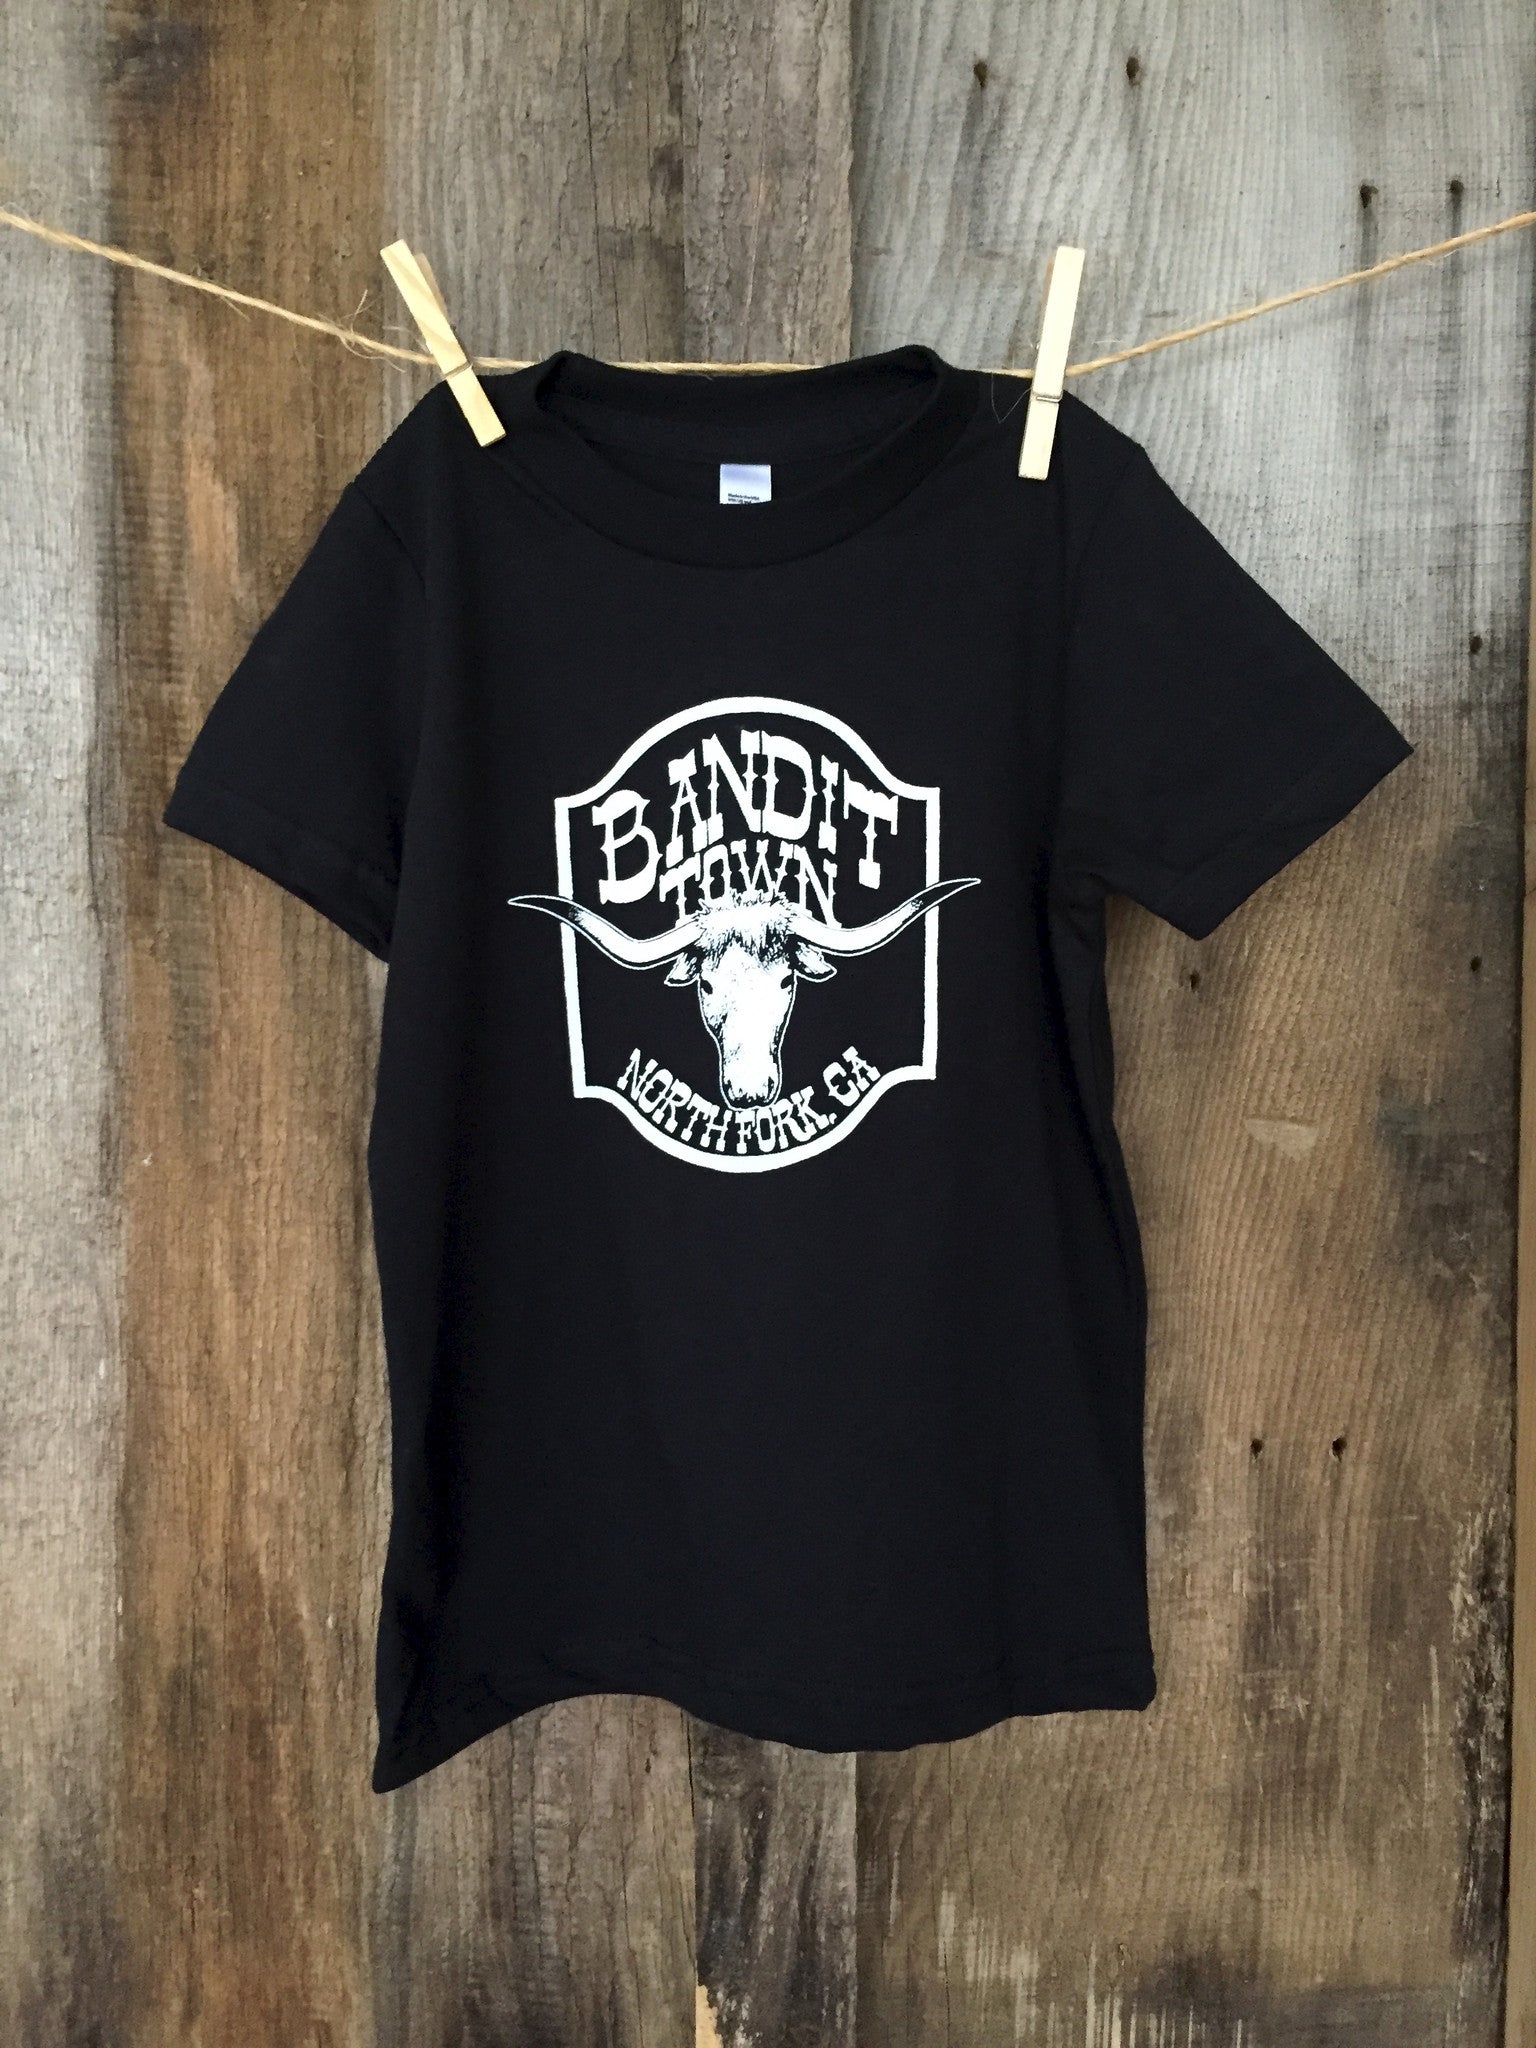 Bandit Kid "Bandit Town Steer" Tee Blk/White